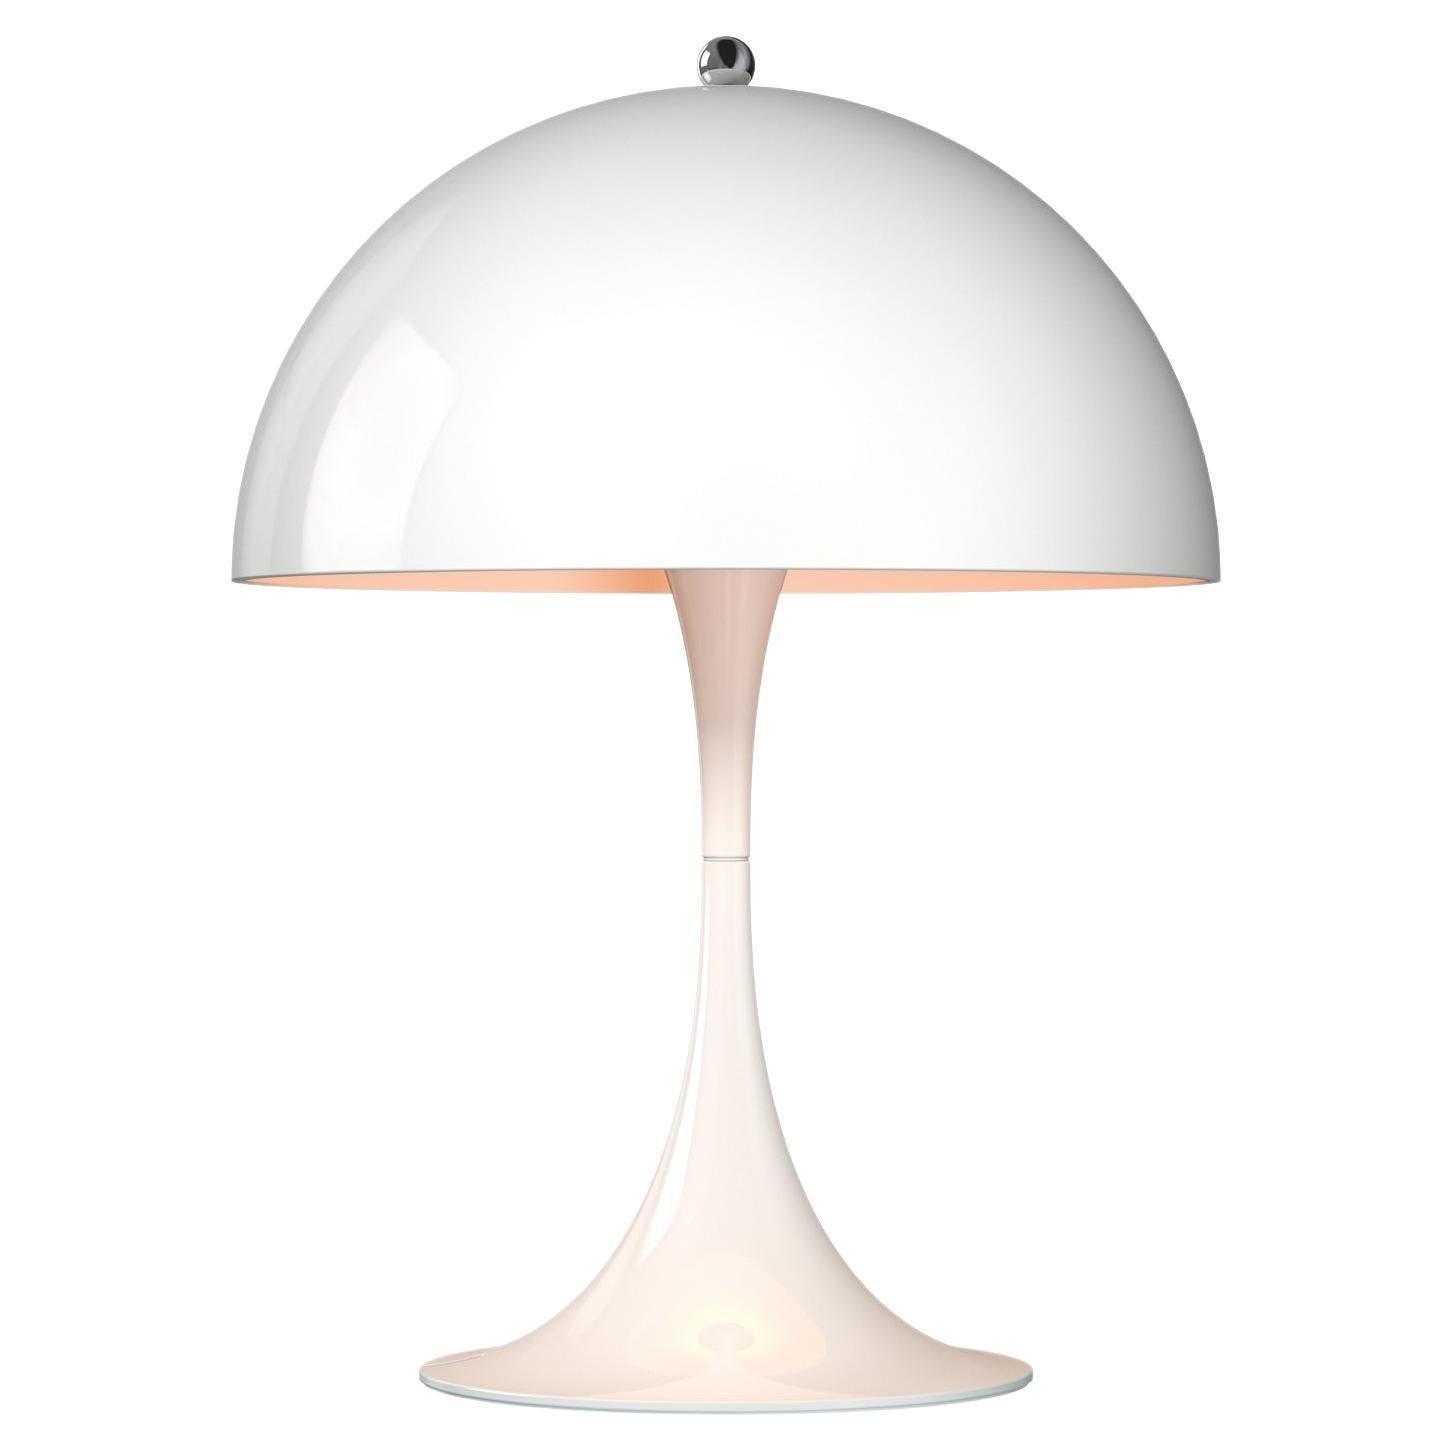 Louis Poulsen Panthella Mini Table Lamp in White by Verner Panton